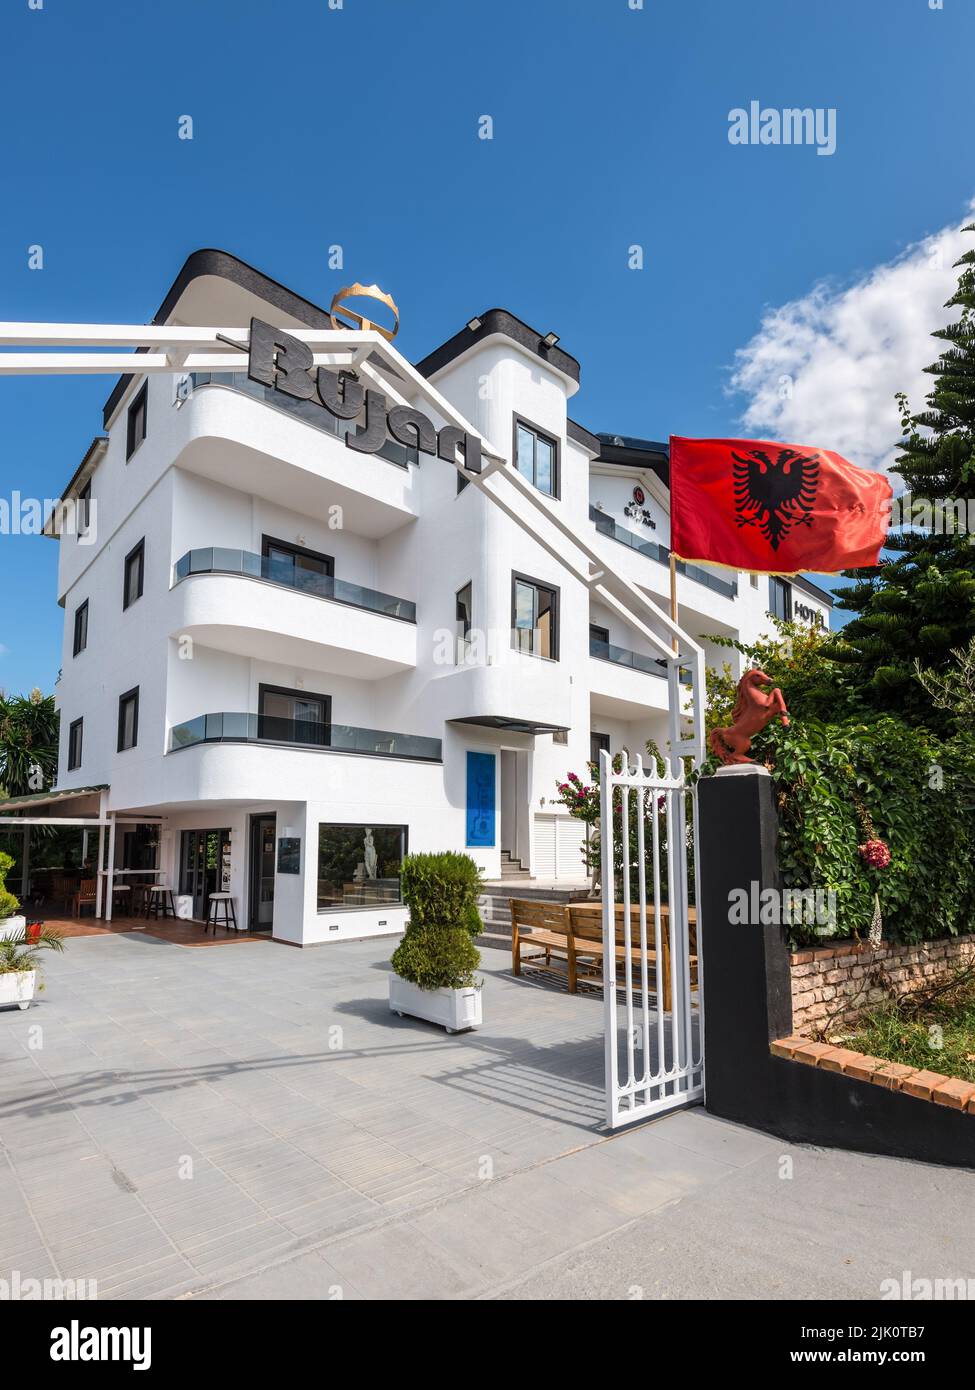 Ksamil, Albania - 9 de septiembre de 2021: Vista de la calle de Ksamil durante el día con la bandera albanesa frente al Hotel Vila Park Bujari en Ksamil, Albania. Va Foto de stock